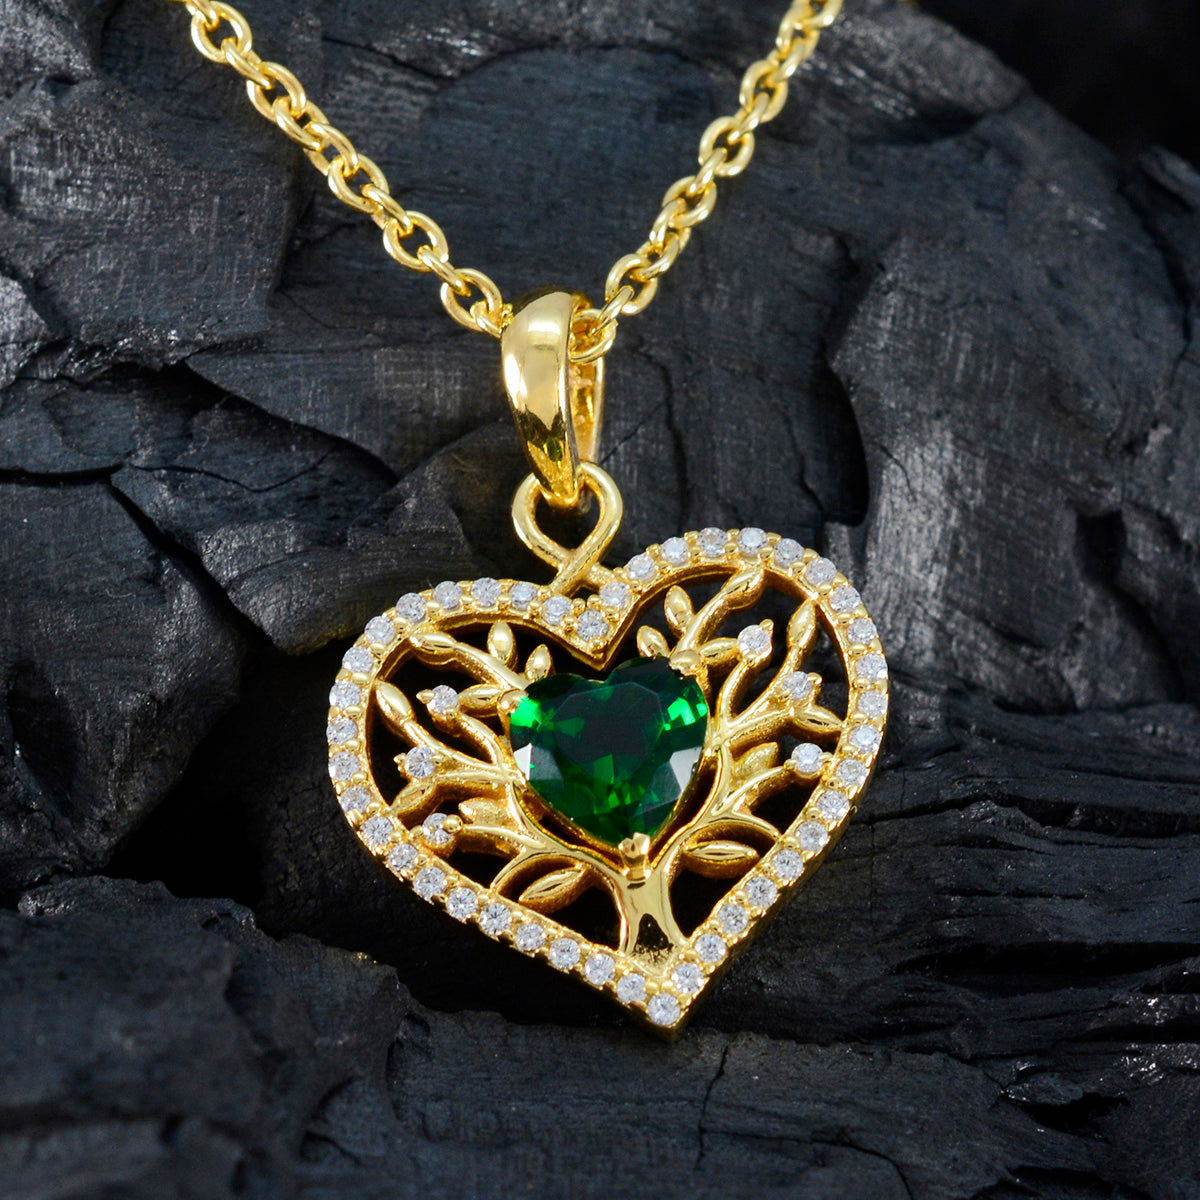 Riyo preciosas gemas corazón facetado verde Esmeralda cz colgante de plata maciza regalo para boda